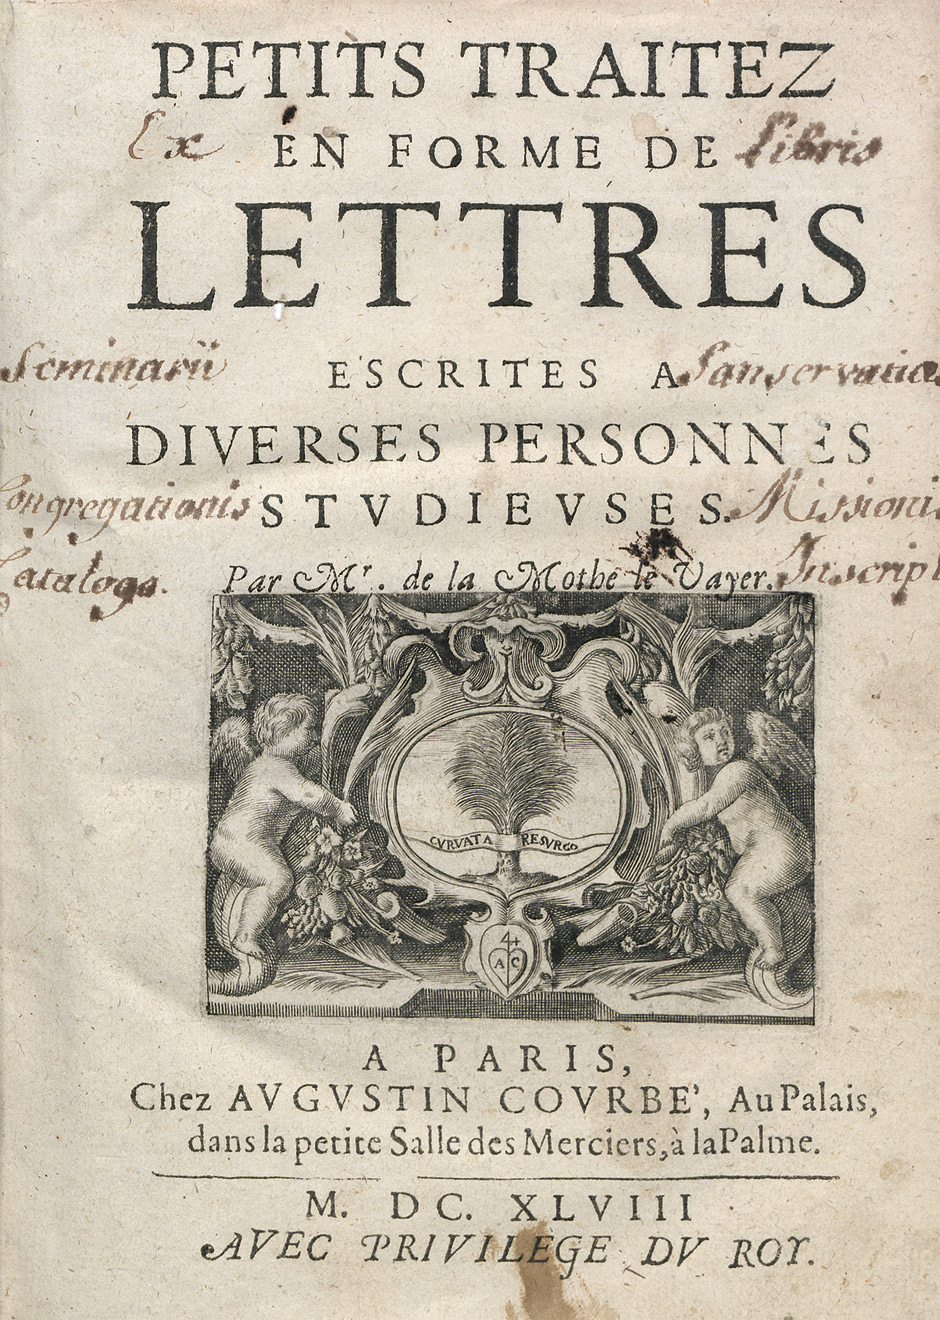 Lot 2110, Auction  115, La Mothe Le Vayer, François de, Petits traitez en forme de lettres escrites